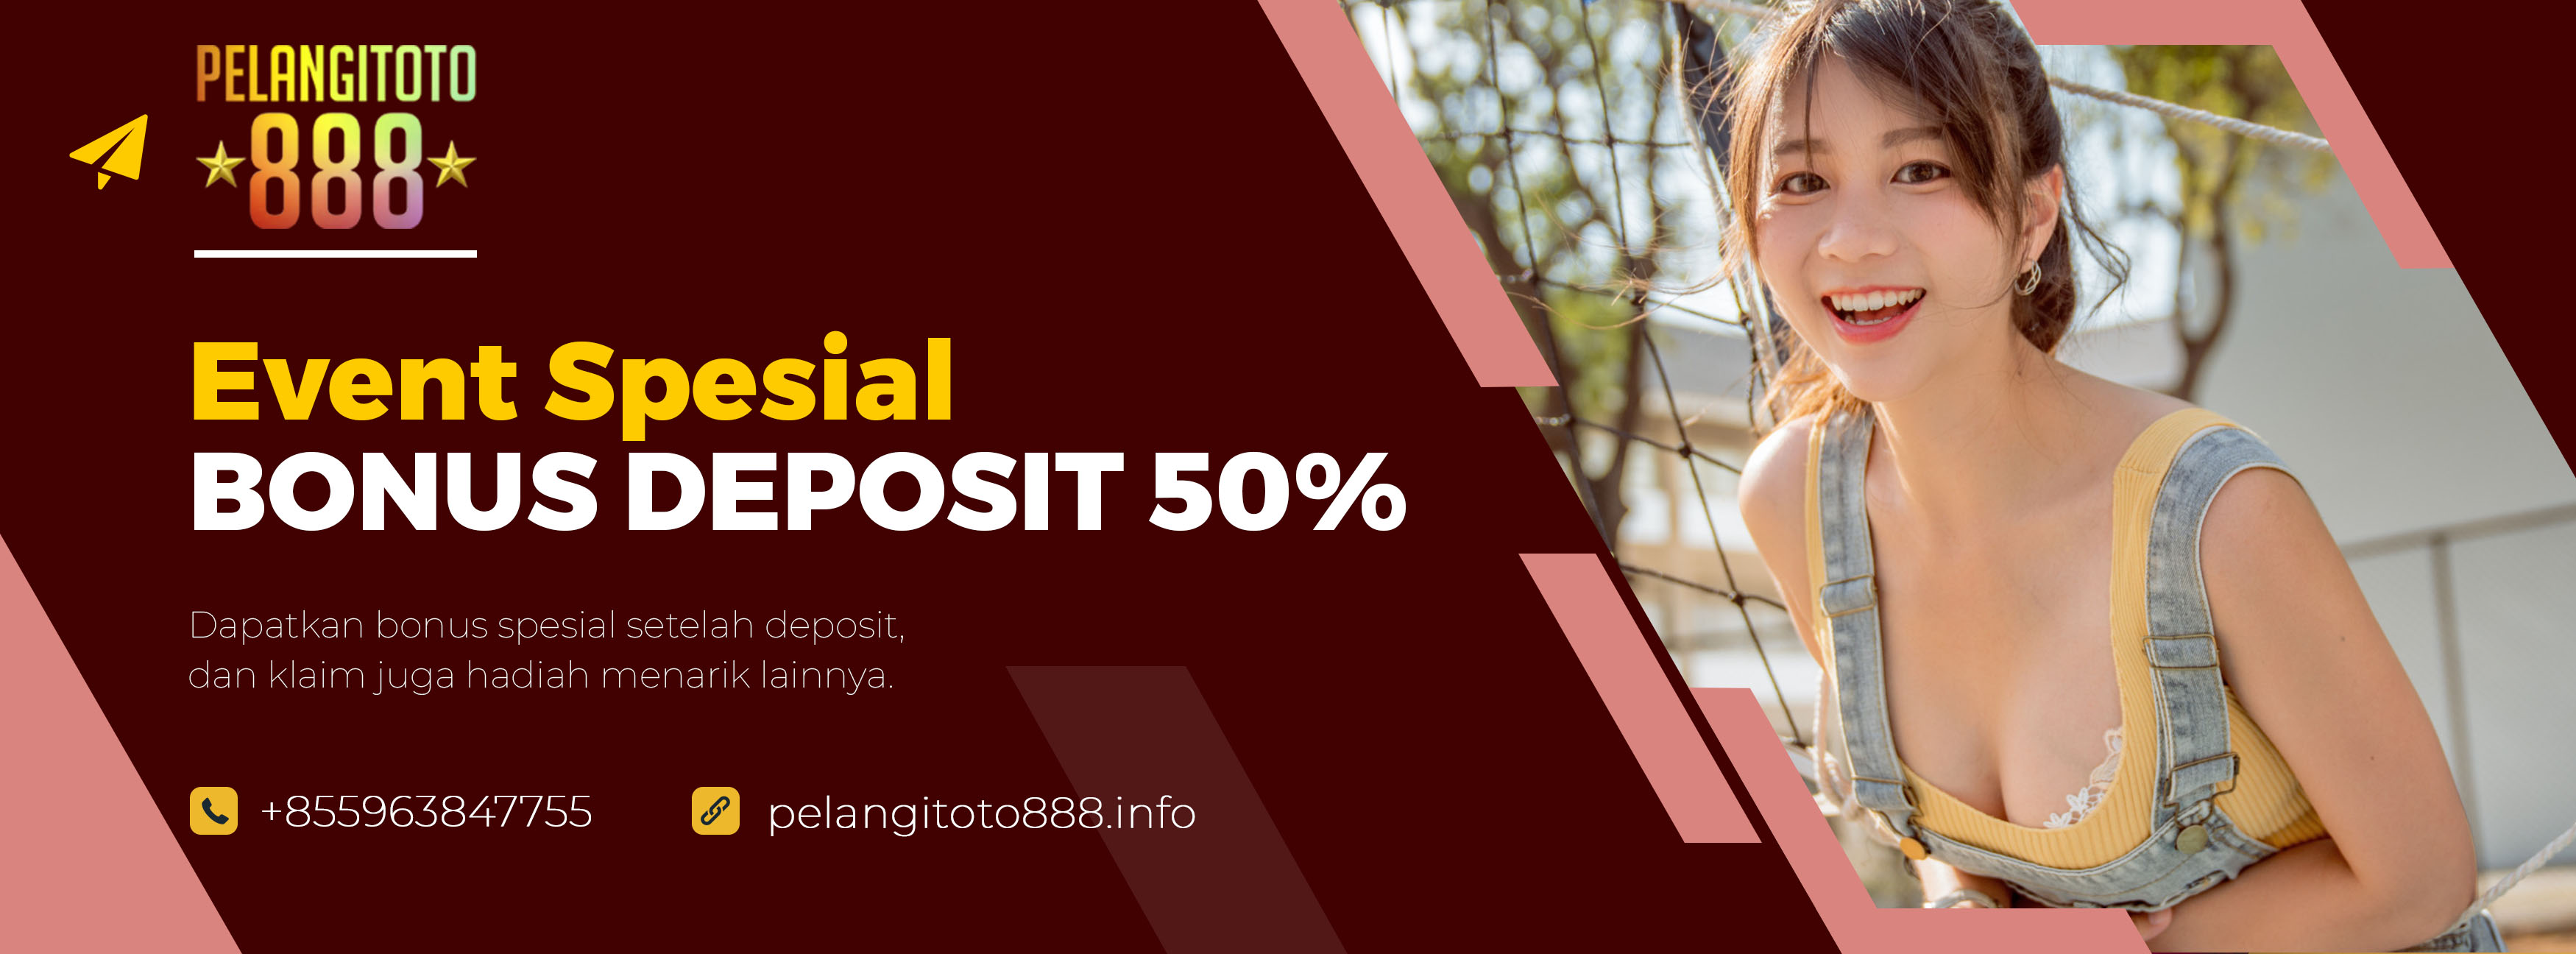 Bonus Deposit 50 Pelangitoto888